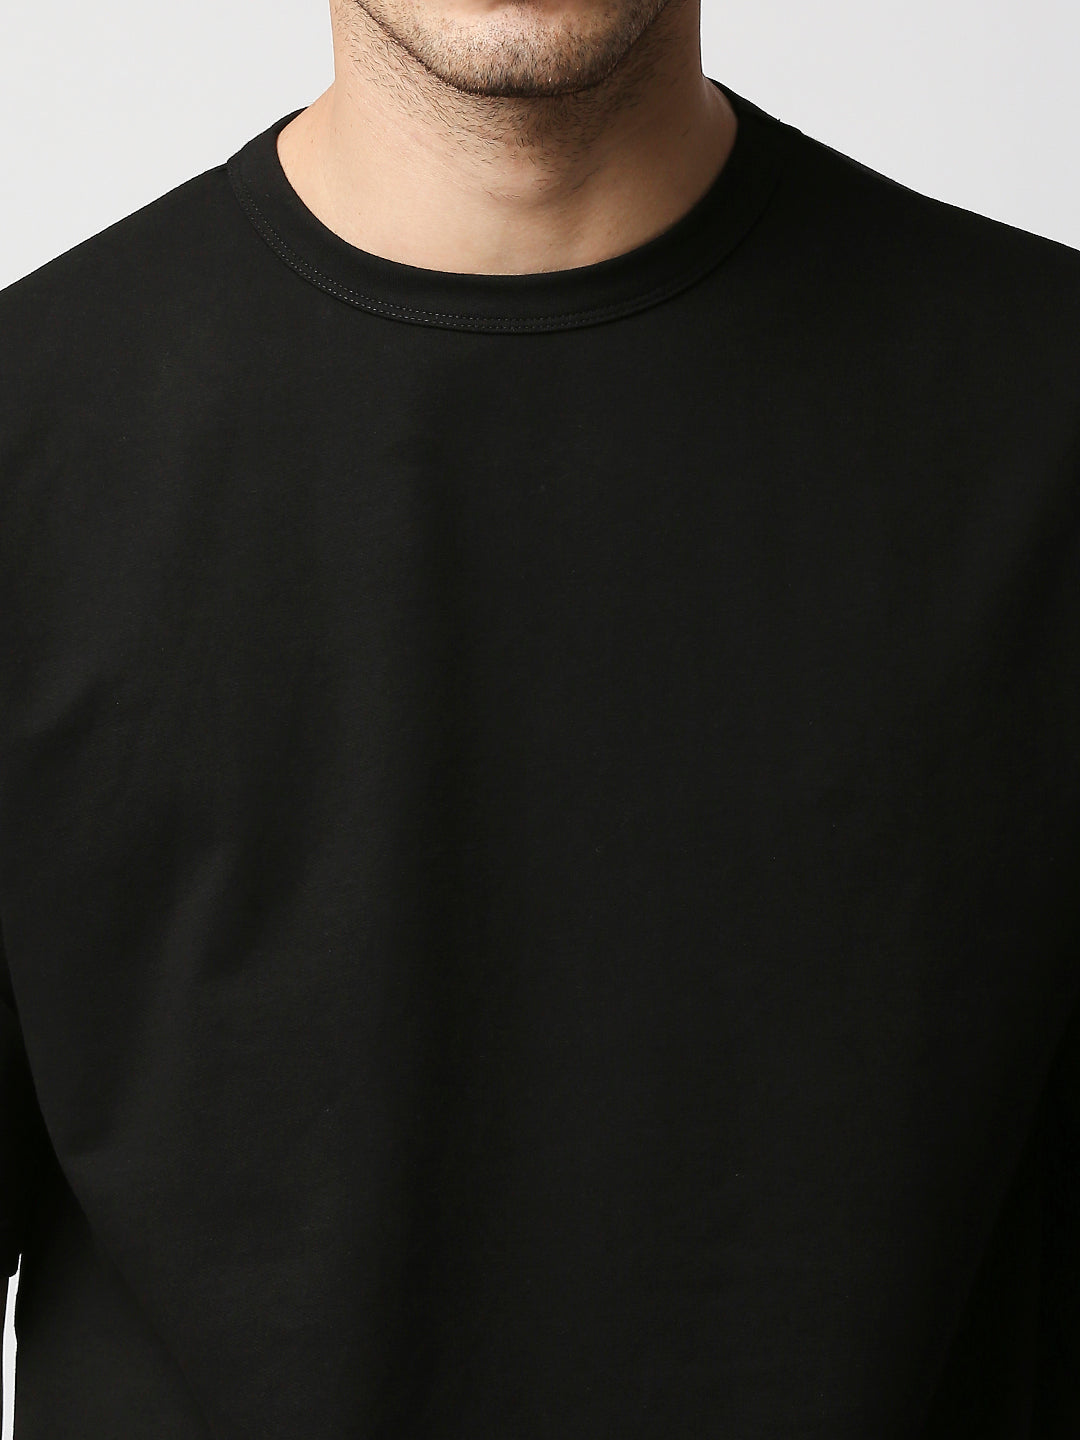 Buy BLAMBLACK Men Round neck Co-ordinates Set Black Color Solid Half sleeves